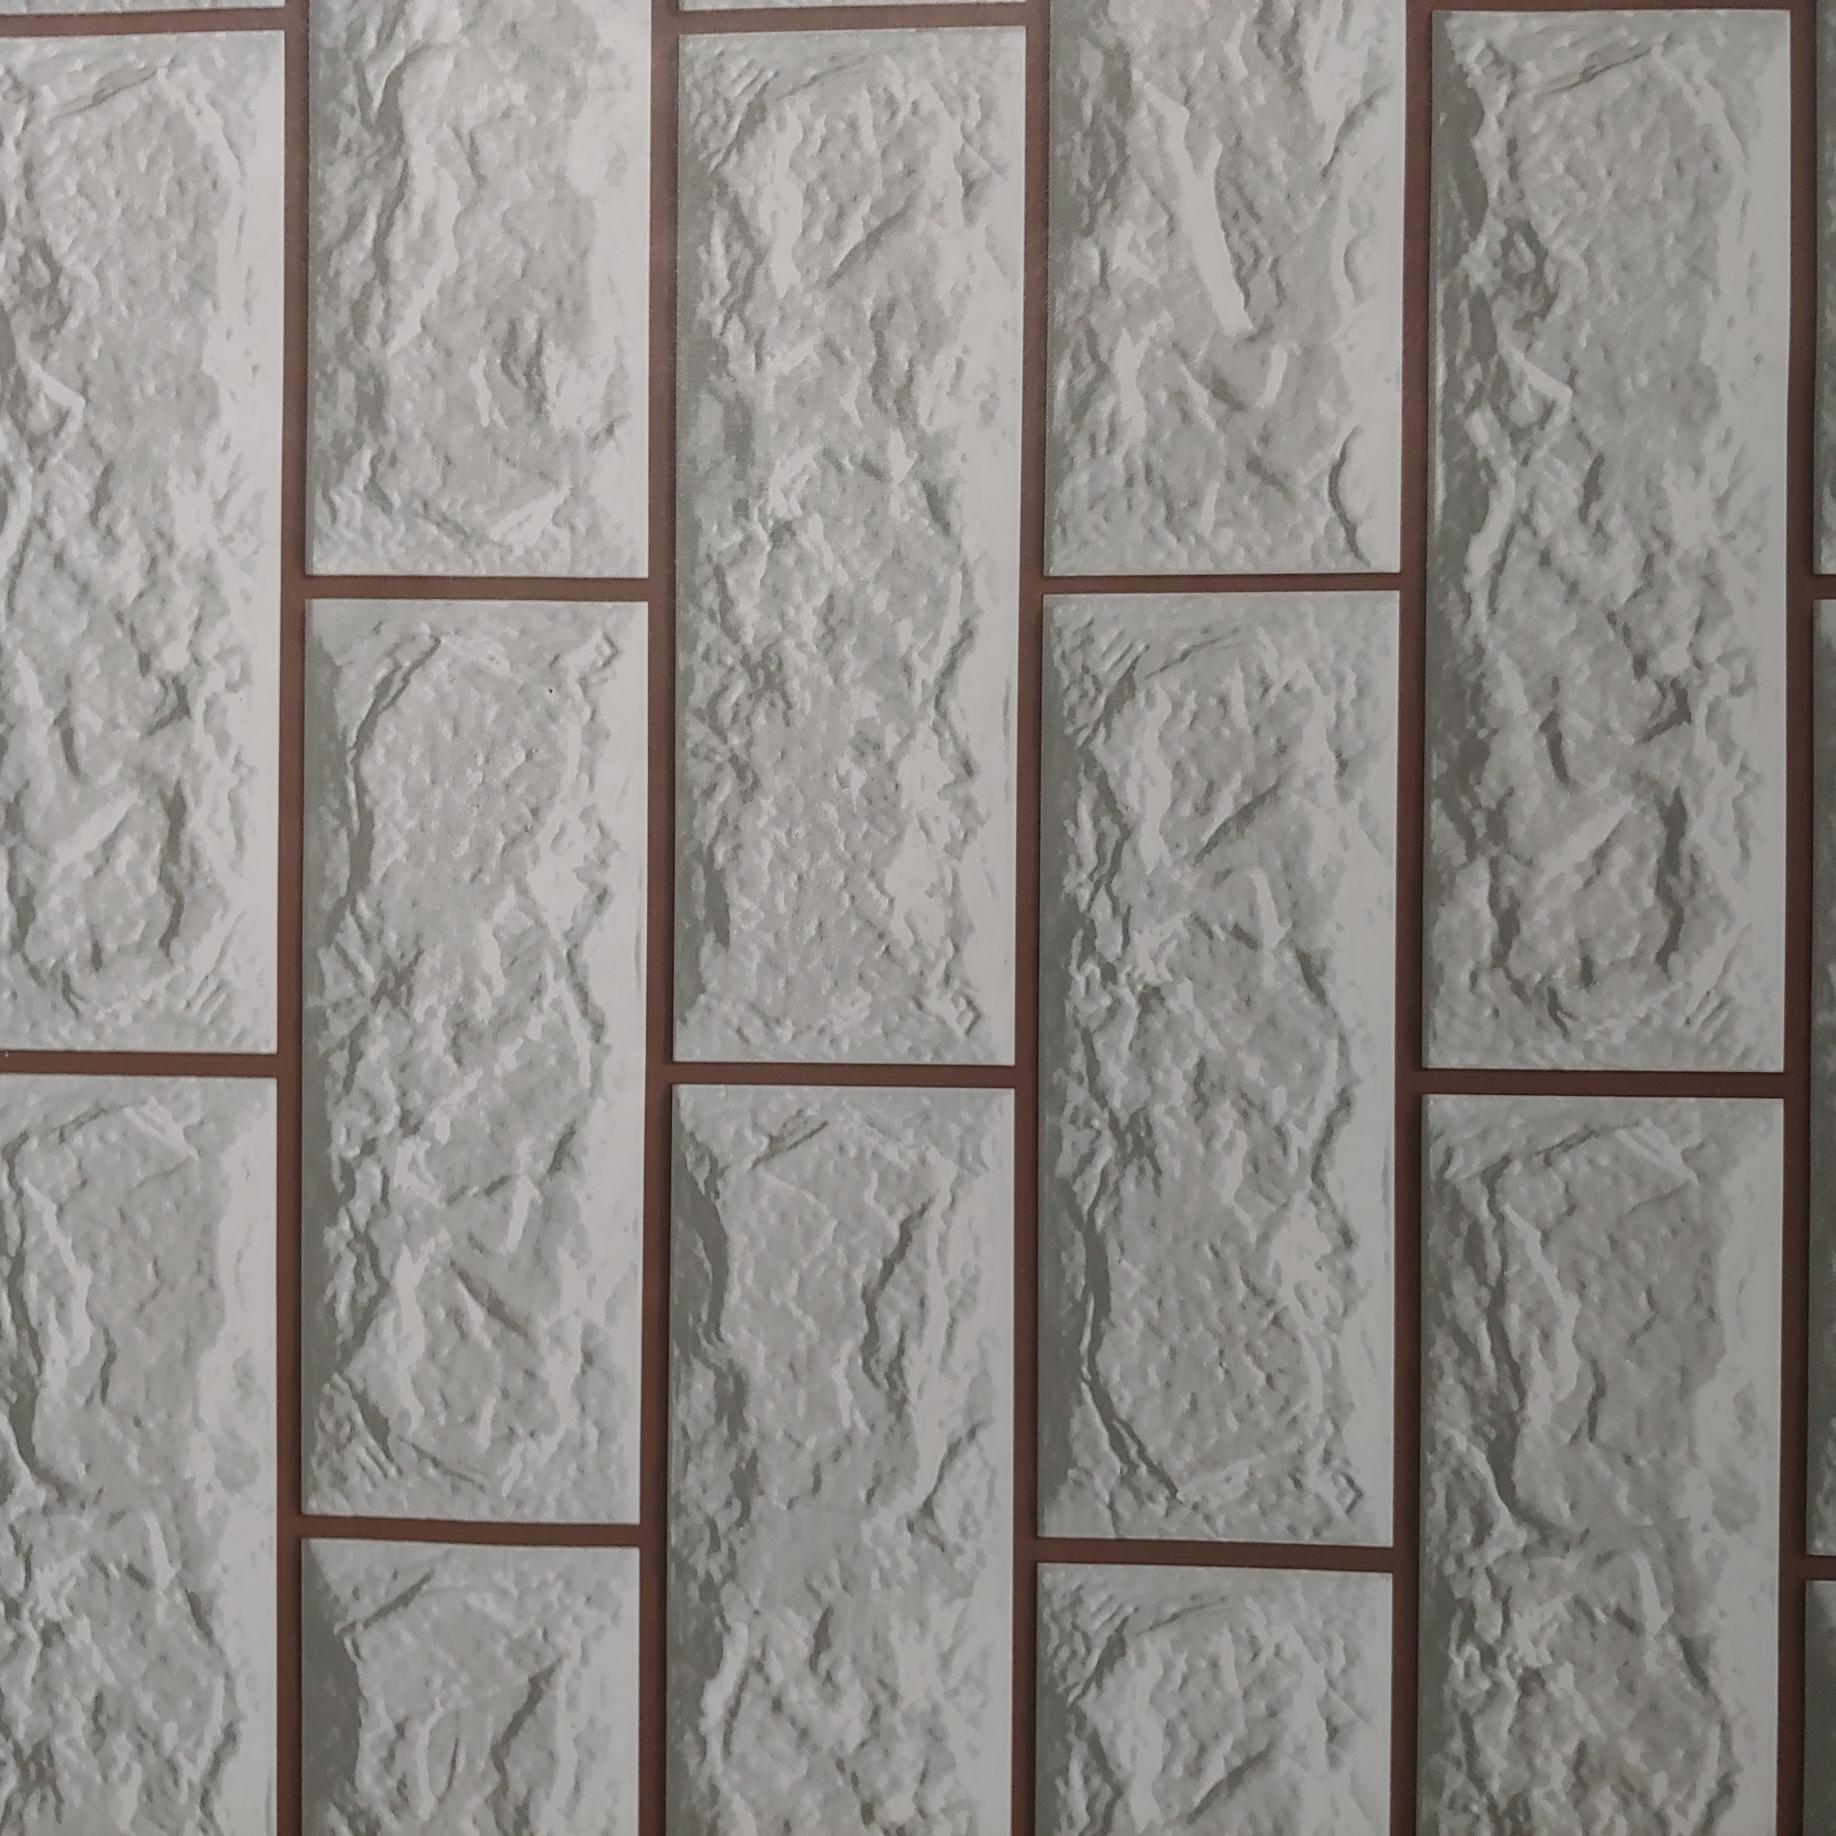 Giấy dán tường giả gạch màu xám ( cuộn dài 10m khổ rộng 45 cm)